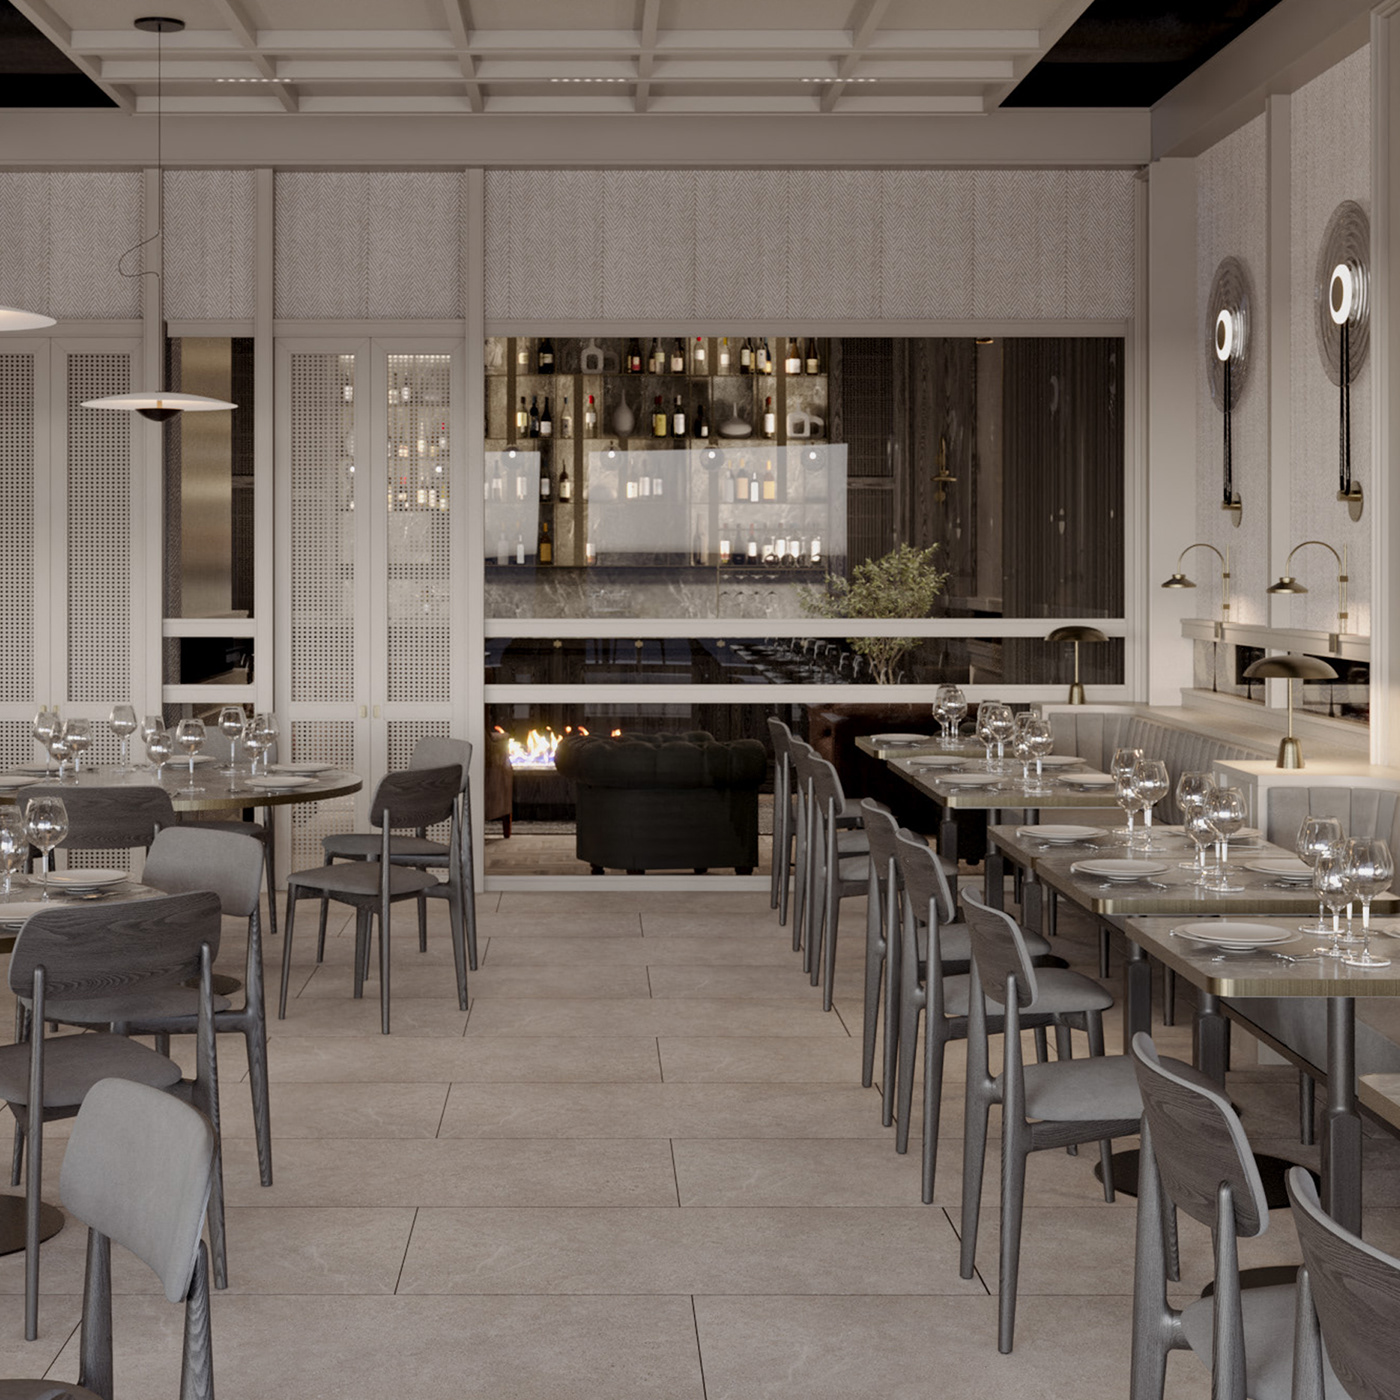 3ds max architecture interior design  Render archviz CGI corona render  restaurant bar